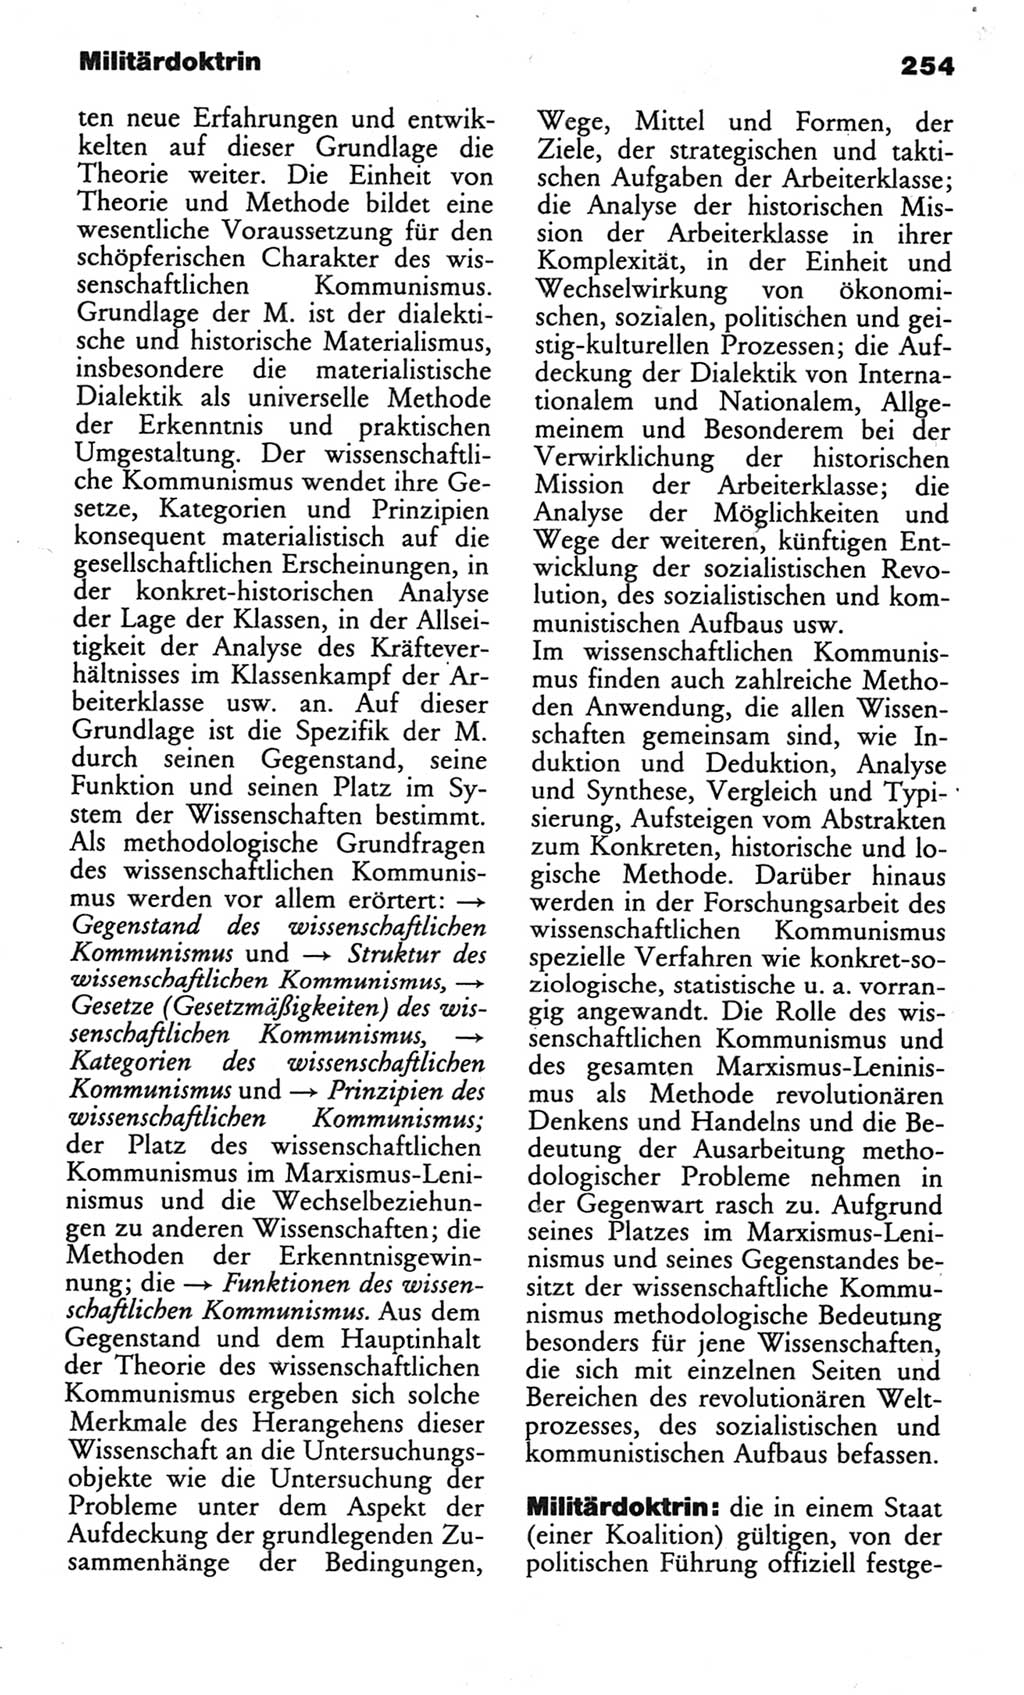 Wörterbuch des wissenschaftlichen Kommunismus [Deutsche Demokratische Republik (DDR)] 1982, Seite 254 (Wb. wiss. Komm. DDR 1982, S. 254)